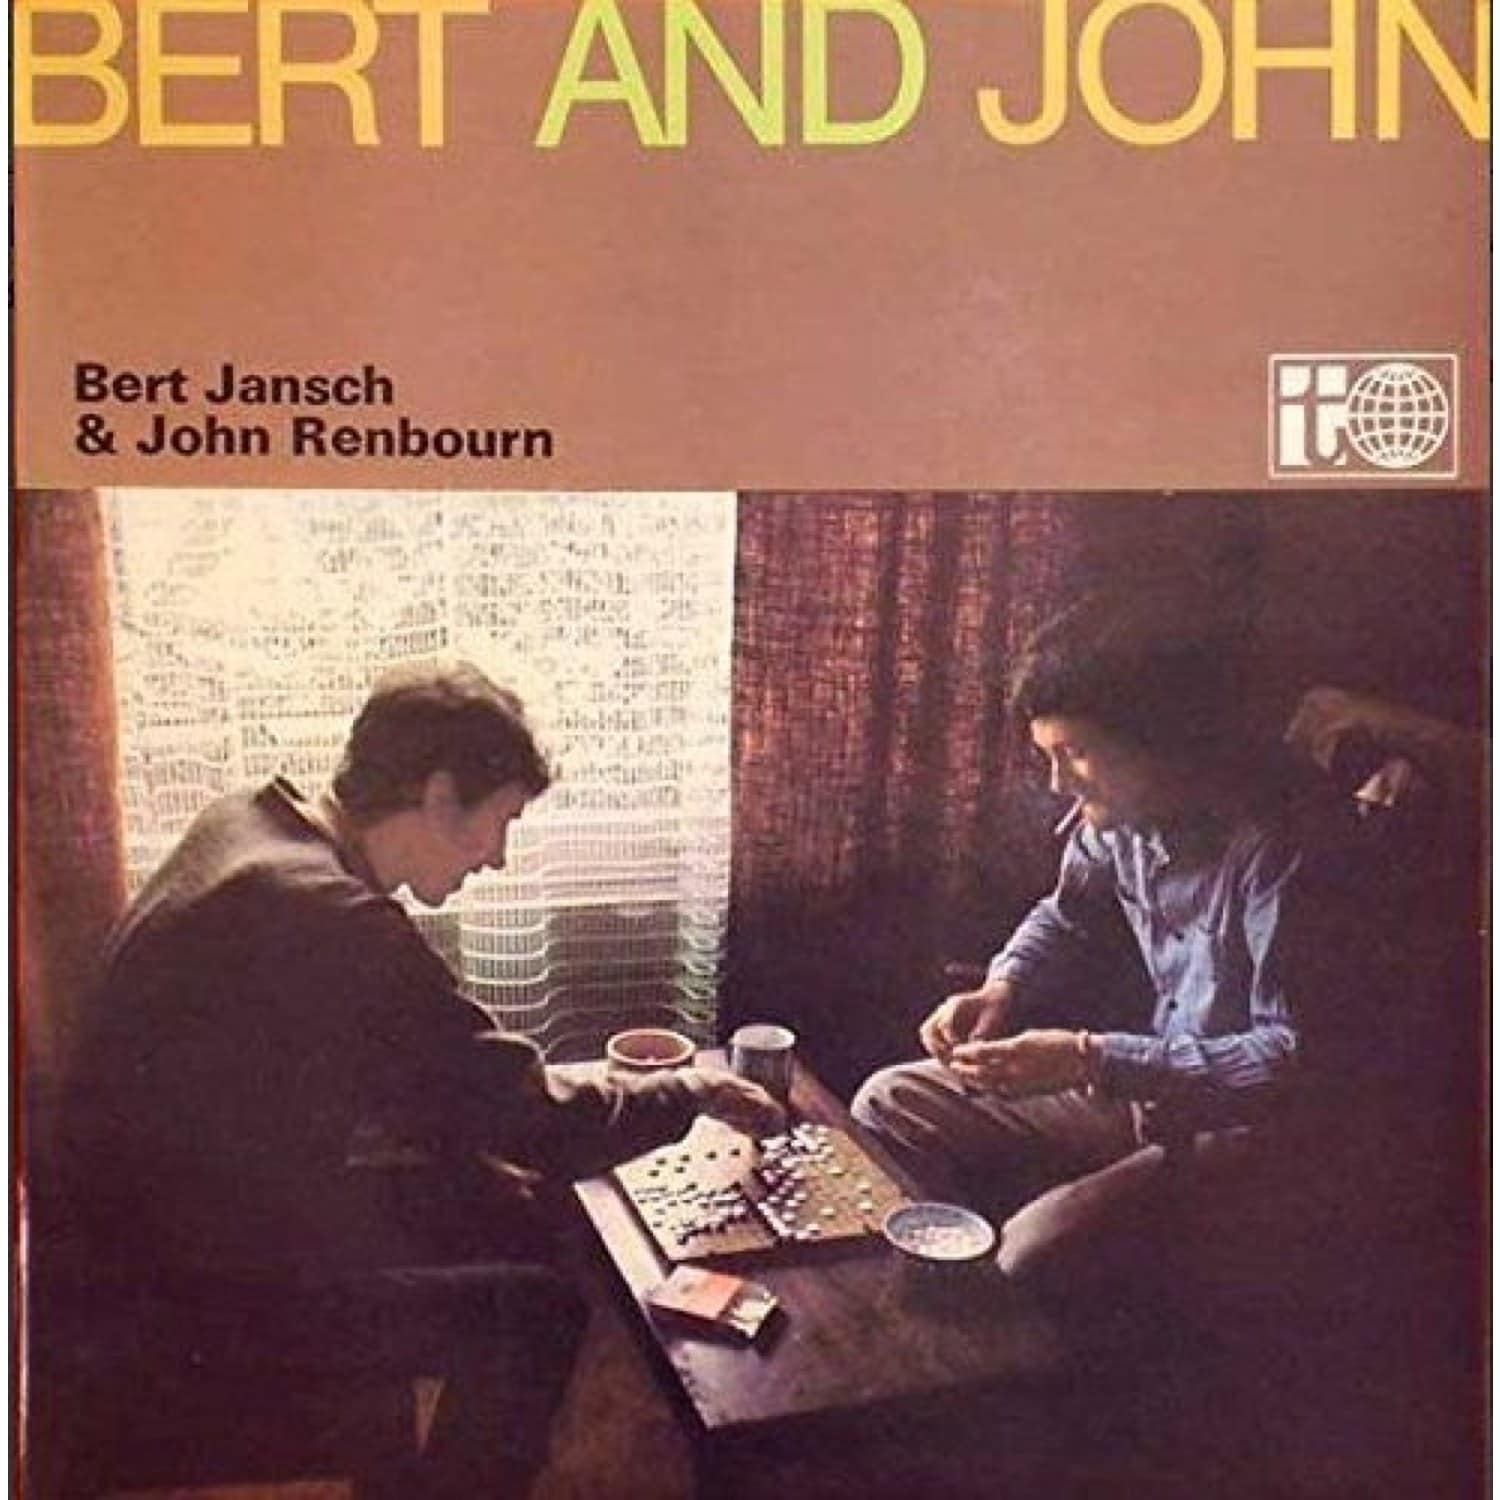 Bert Jansch & John Renbourn - BERT & JOHN 